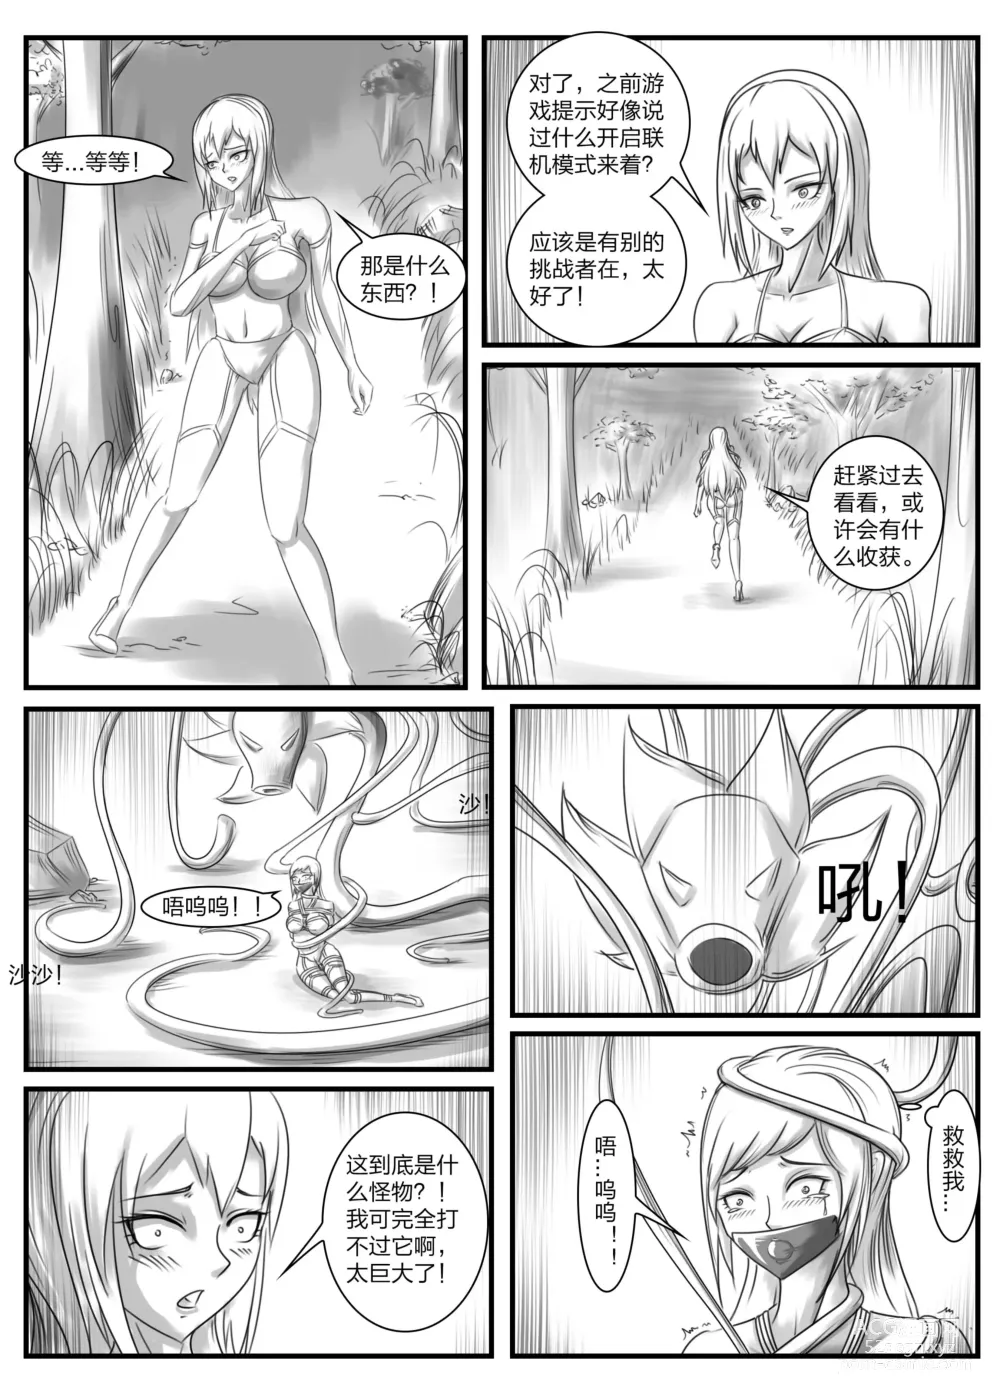 Page 2 of doujinshi 《被困游戏世界2》